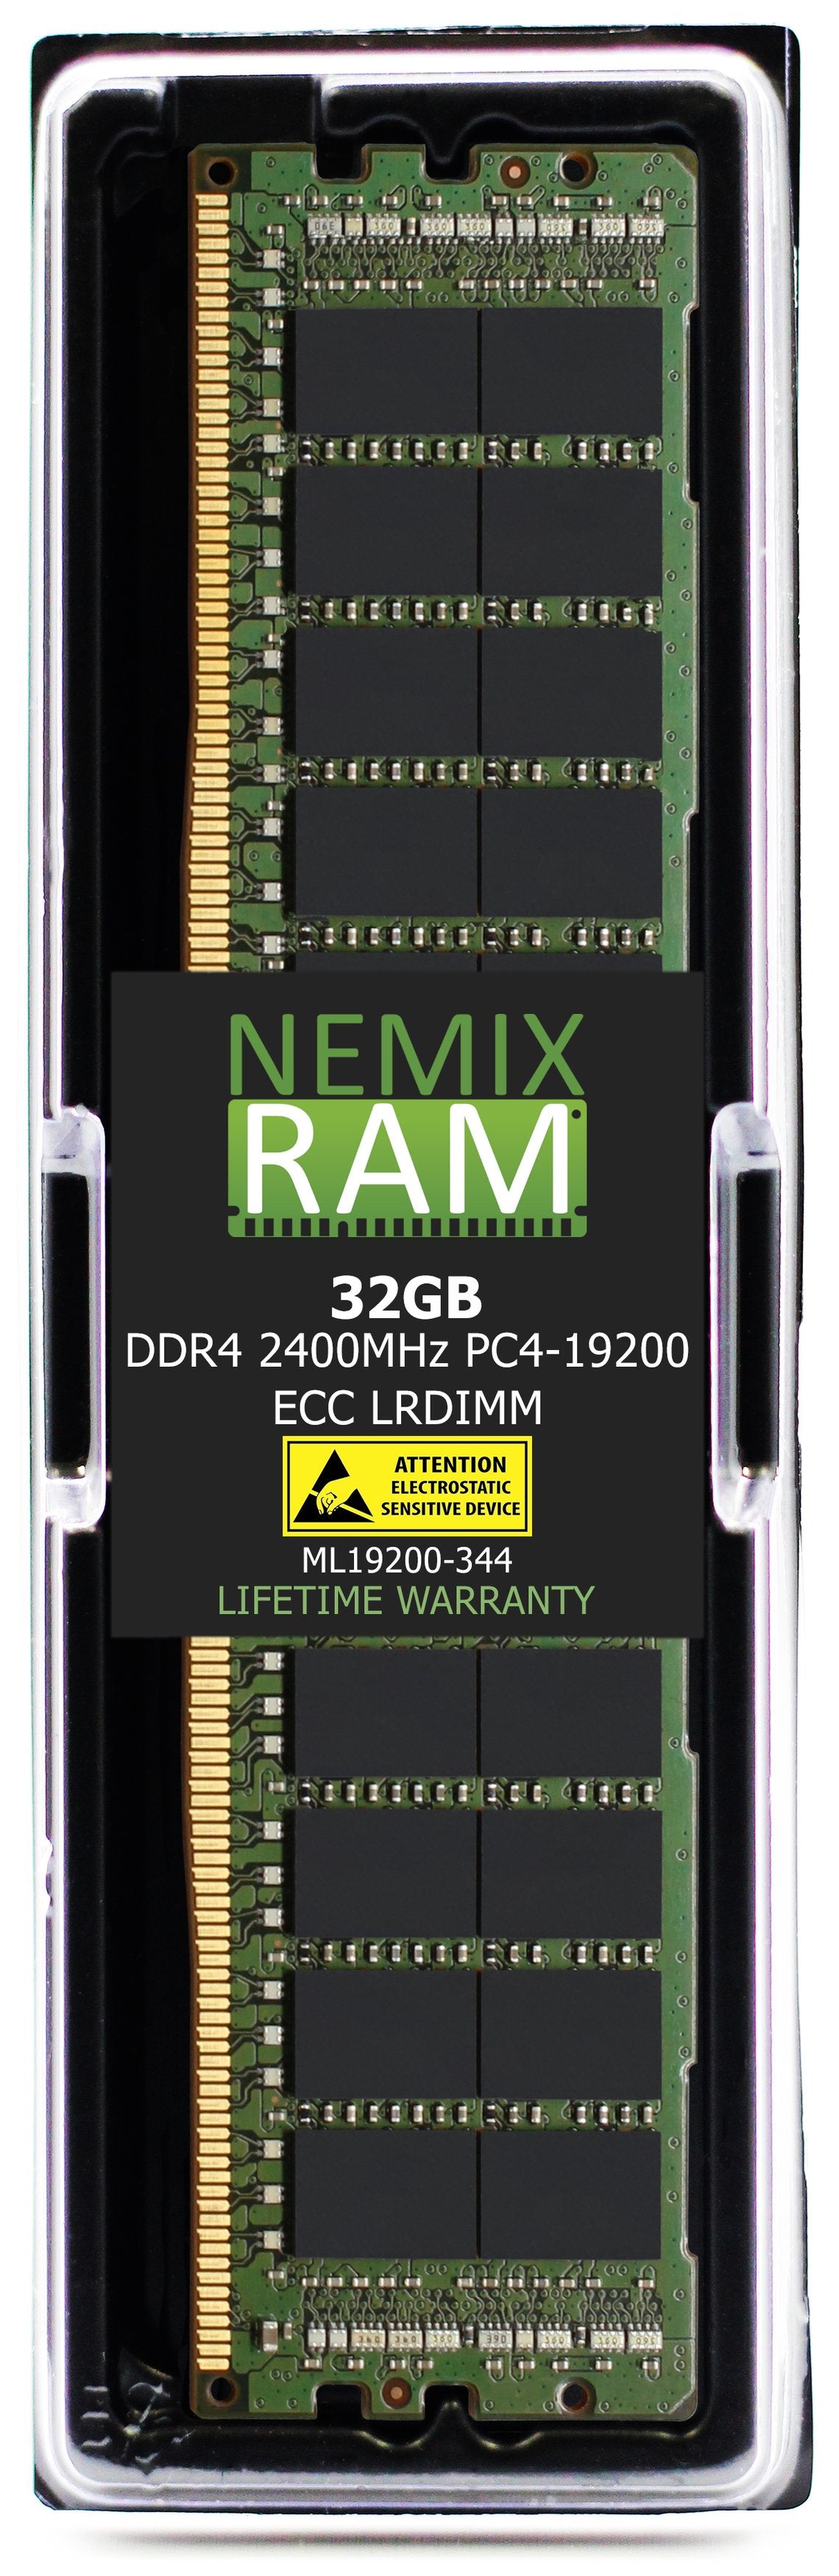 32GB DDR4 2400MHZ PC4-19200 LRDIMM Compatible with Supermicro MEM-DR432L-HL01-LR24